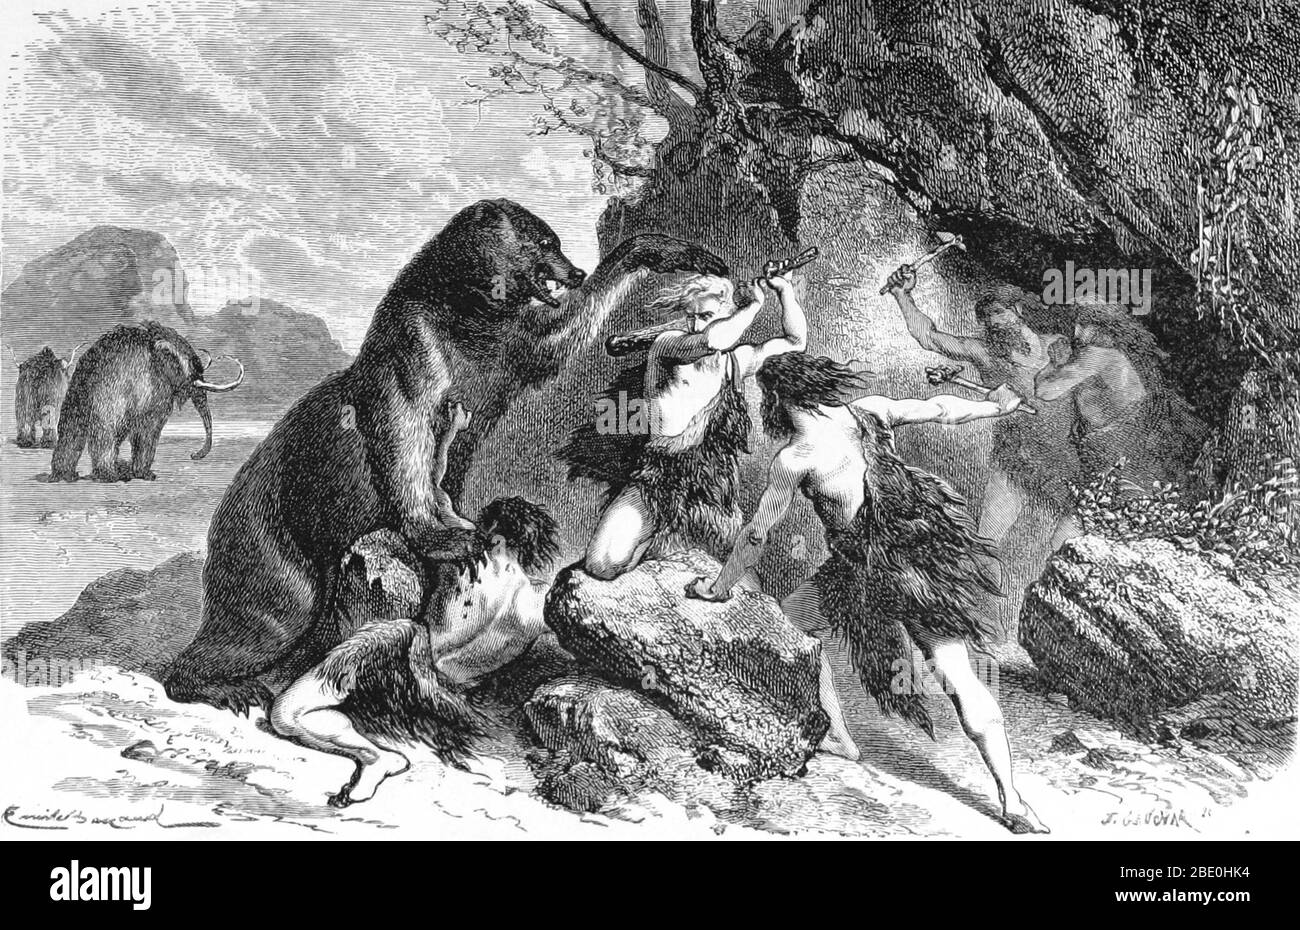 Prähistorische Männer mit Holzknüppeln und Steinaxt, um Angriffe durch einen großen Höhlenbären abzuwehren. Der Höhlenbär (Ursus spelaeus) war eine Bärenart, die während des Pleistozän in Europa lebte und vor etwa 27,500 Jahren zu Beginn des letzten Gletschermaximums ausgestorben war. Mammuts können im Hintergrund gesehen werden. Ein Mammut ist jede Art der ausgestorbenen Gattung Mammuthus, Proboscideans, die häufig mit langen, gebogenen Stoßzähnen und, bei nördlichen Arten, einer Abdeckung von langen Haaren ausgestattet sind. Sie lebten von der Pliozän-Epoche (von ungefähr 5 Million Jahren) in das Holozän vor ungefähr 4,500 Jahren in EINEM Stockfoto